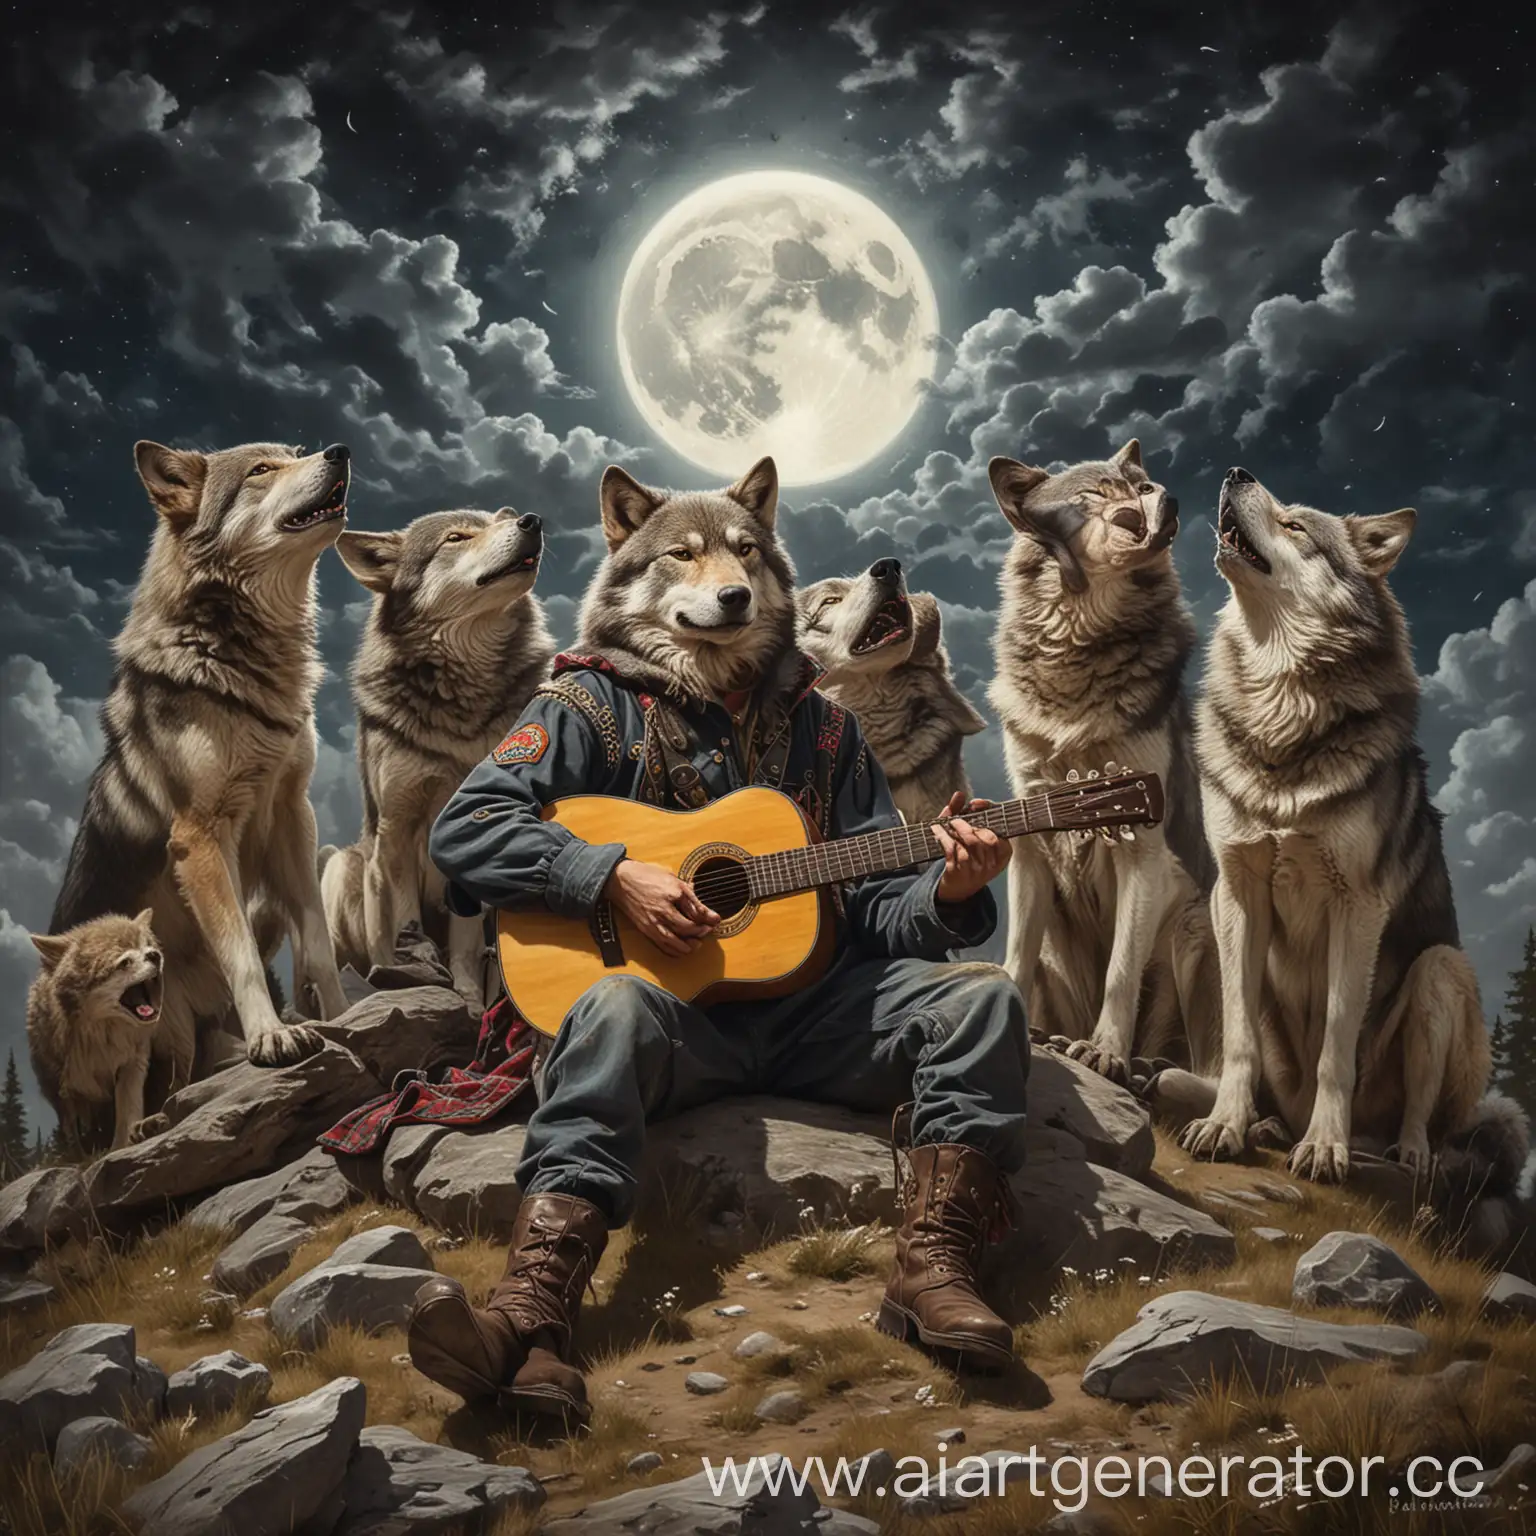 Нарисуй картинку. На вершине холма сидят и лежат 10 волков. На волках рубахи и лапти в древнерусском стиле. Между 5 и 6 волками стоит человек. В его руках гитара. Он поет. Он выглядит испуганным. На небе луна.